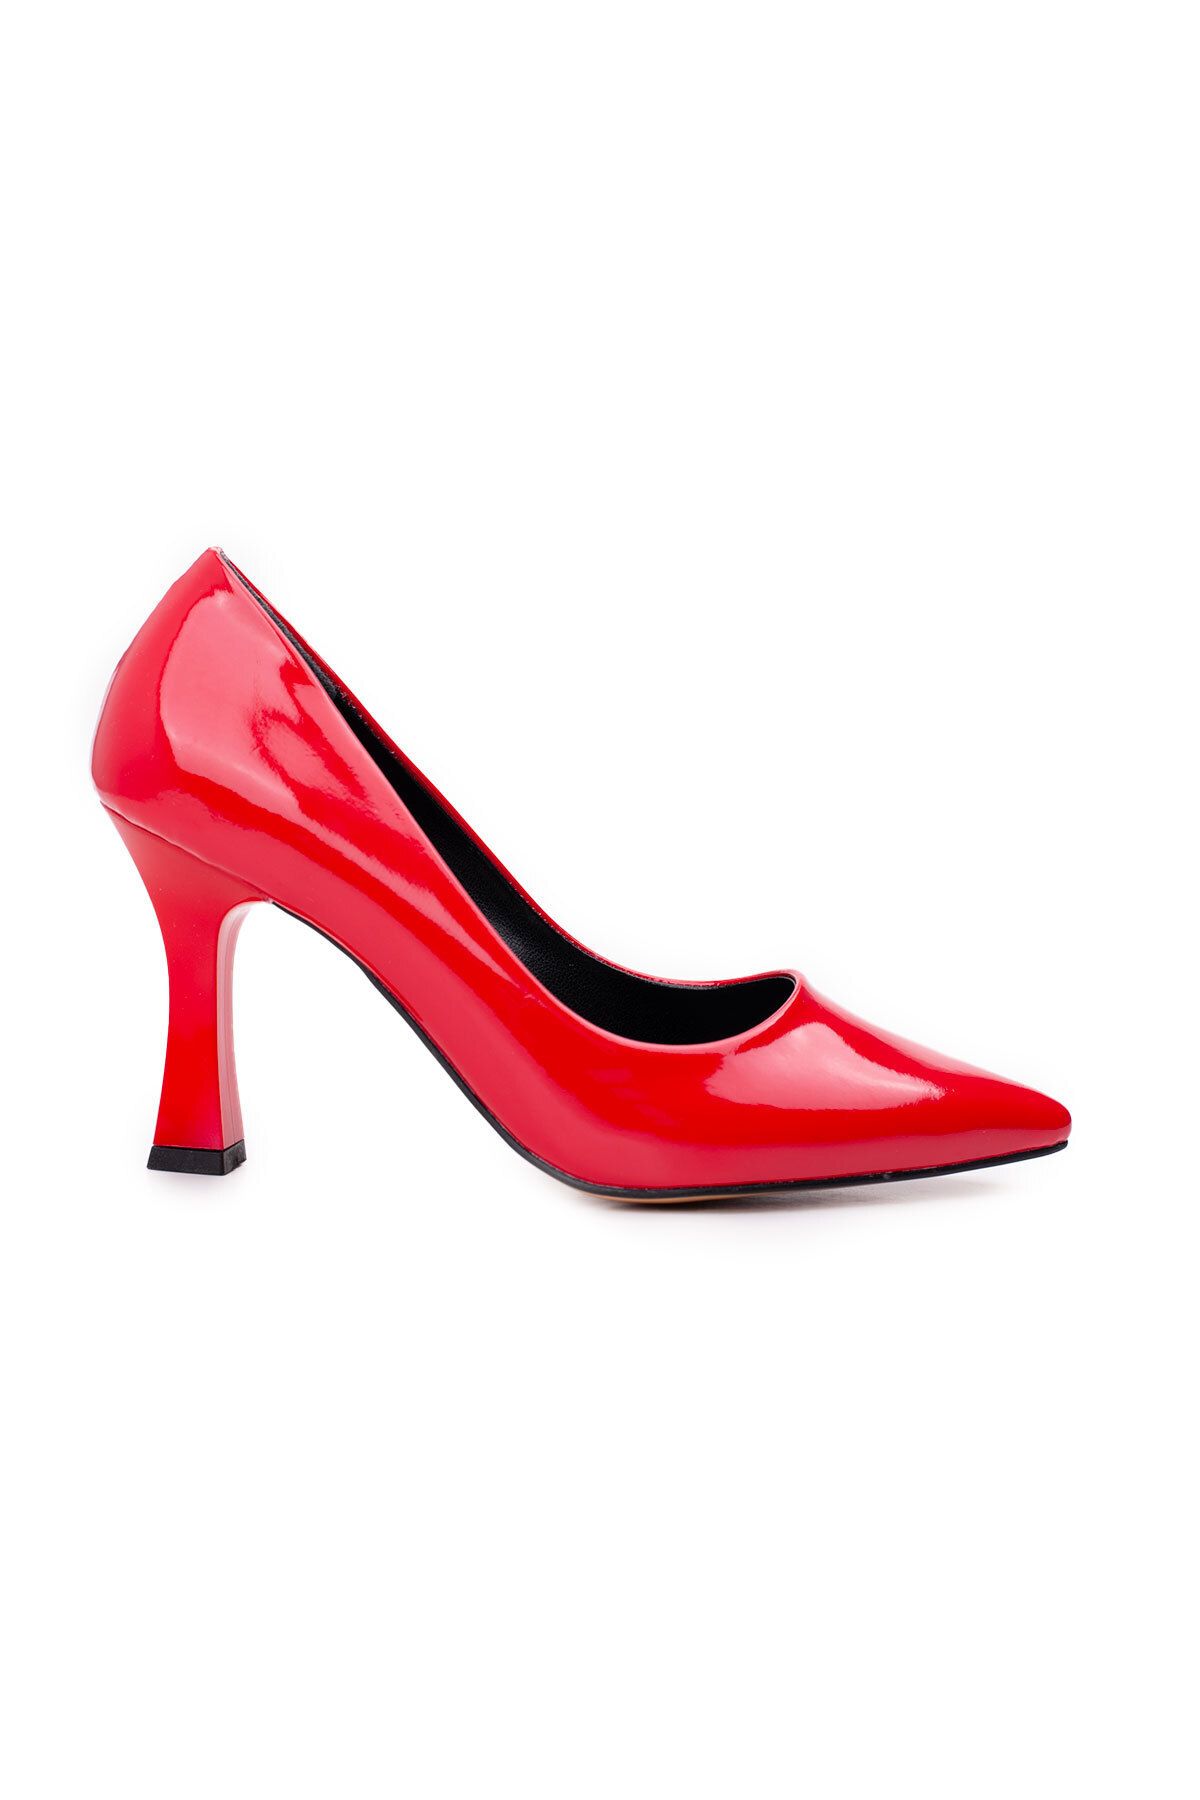 LuisPerry Kadın Topuklu Ayakkabı - Yüksek Topuklu Stiletto Rahat Şık ve Iş Ayakkabısı Kırmızı  Renk Rugan 9 Cm